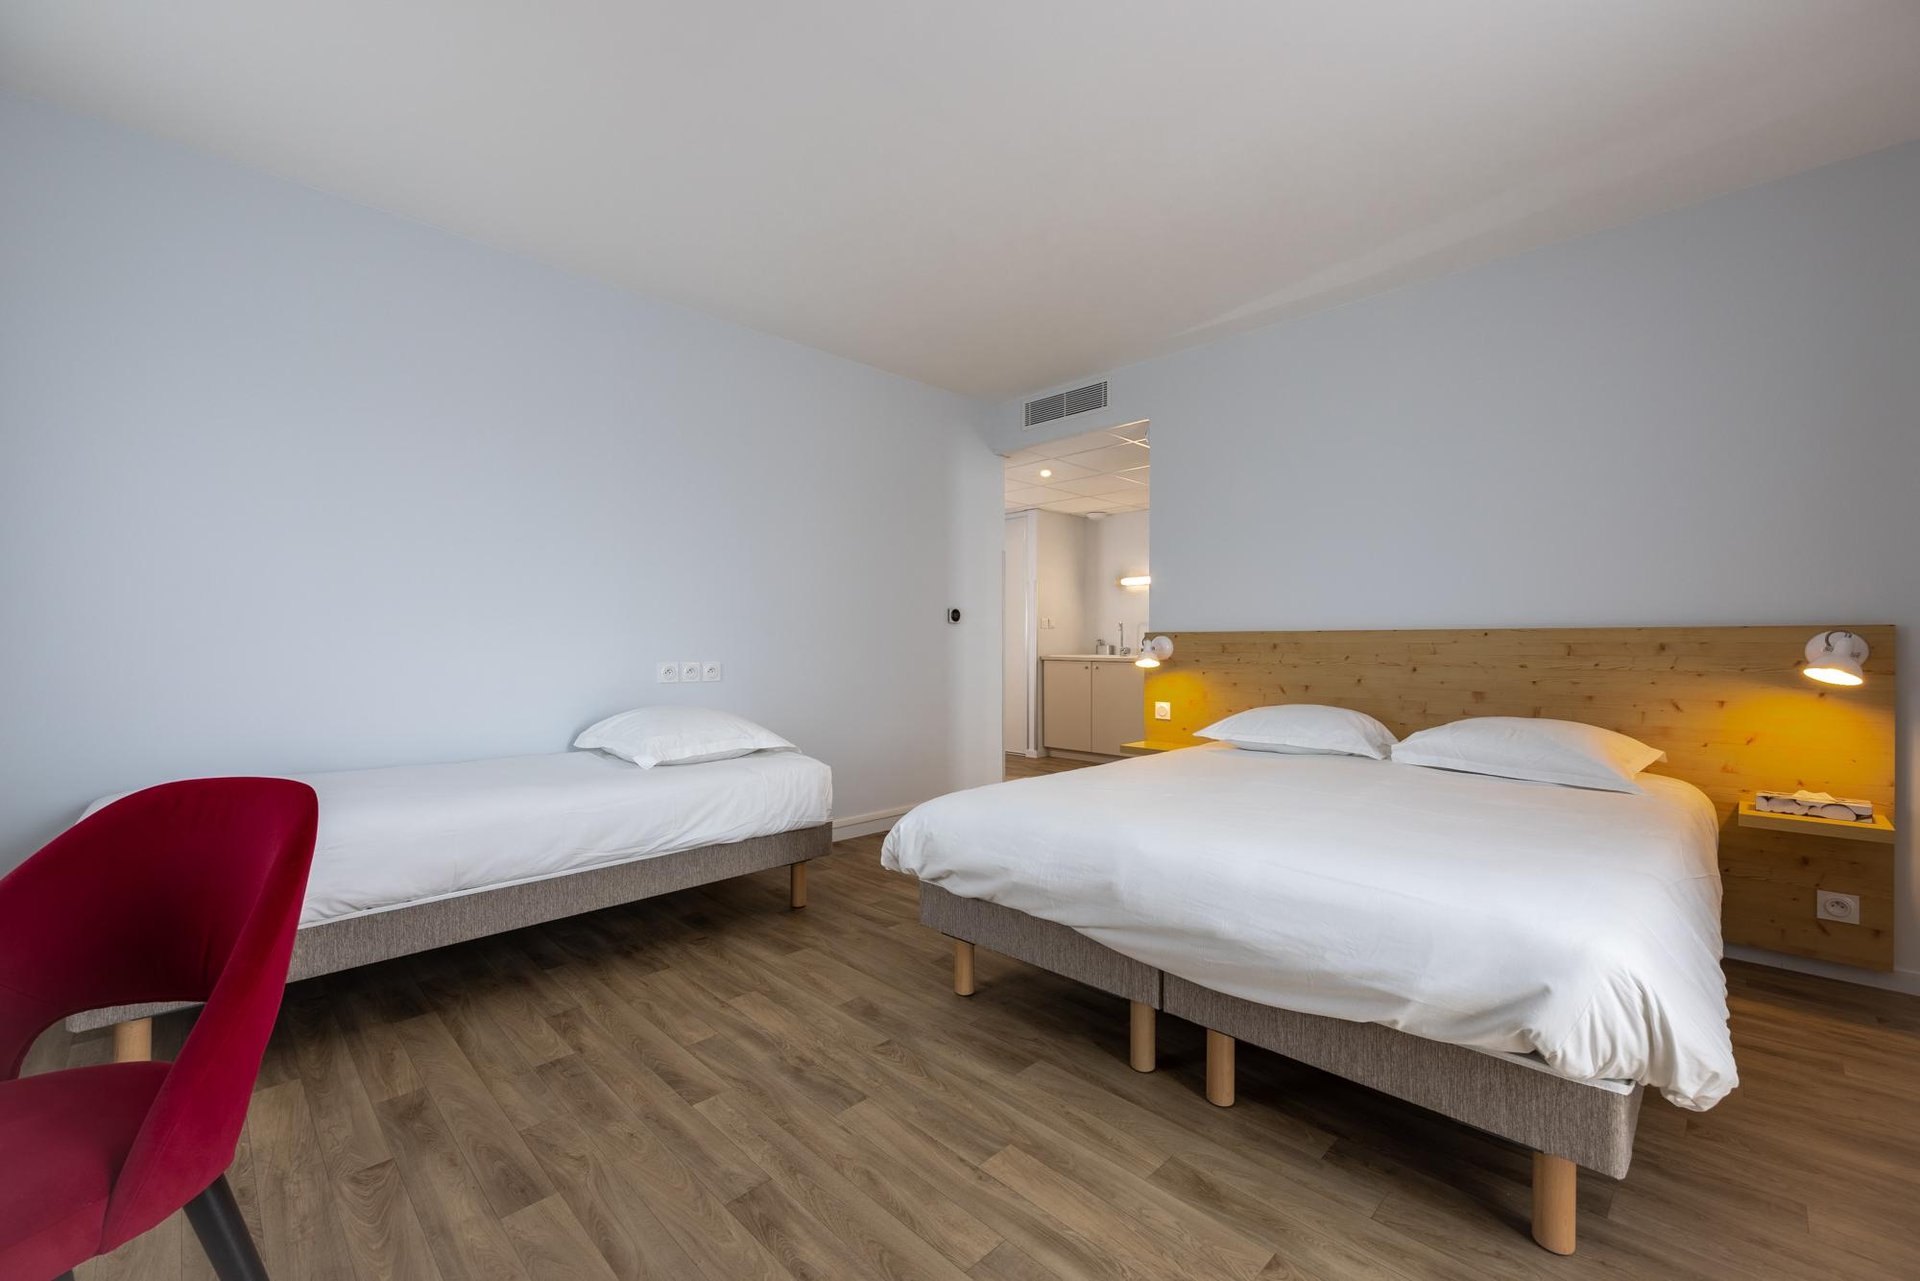 Le Relais des Deux Mers | Hôtel 3 étoiles Lot-et-Garonne | Appartement 3 personnes